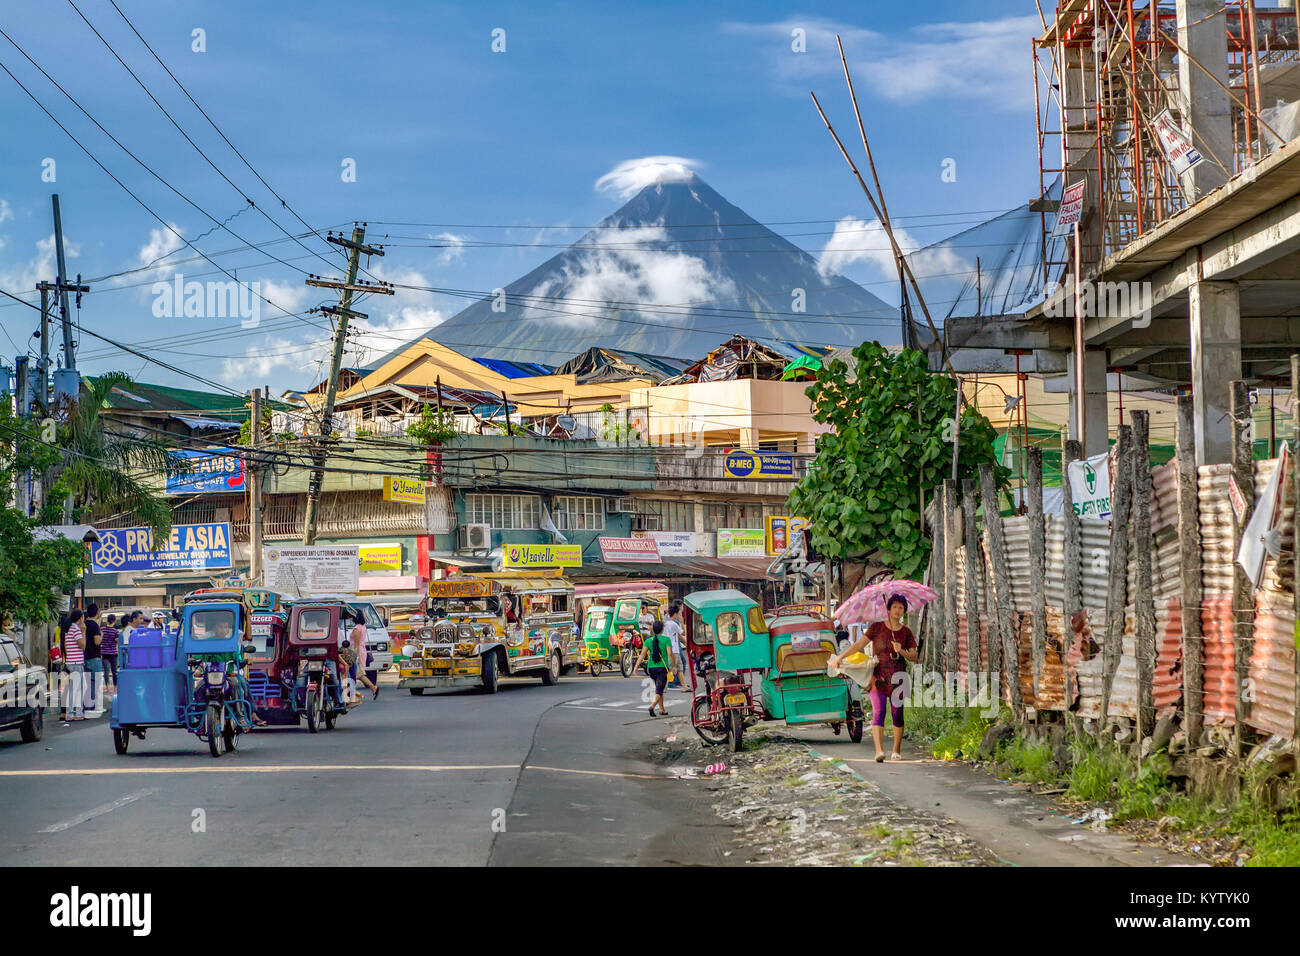 Legazpi est une ville vivant "Sous le volcan". La vie continue comme d'habitude sous la menace constante d'éruption du volcan Mayon montage très actif. Banque D'Images